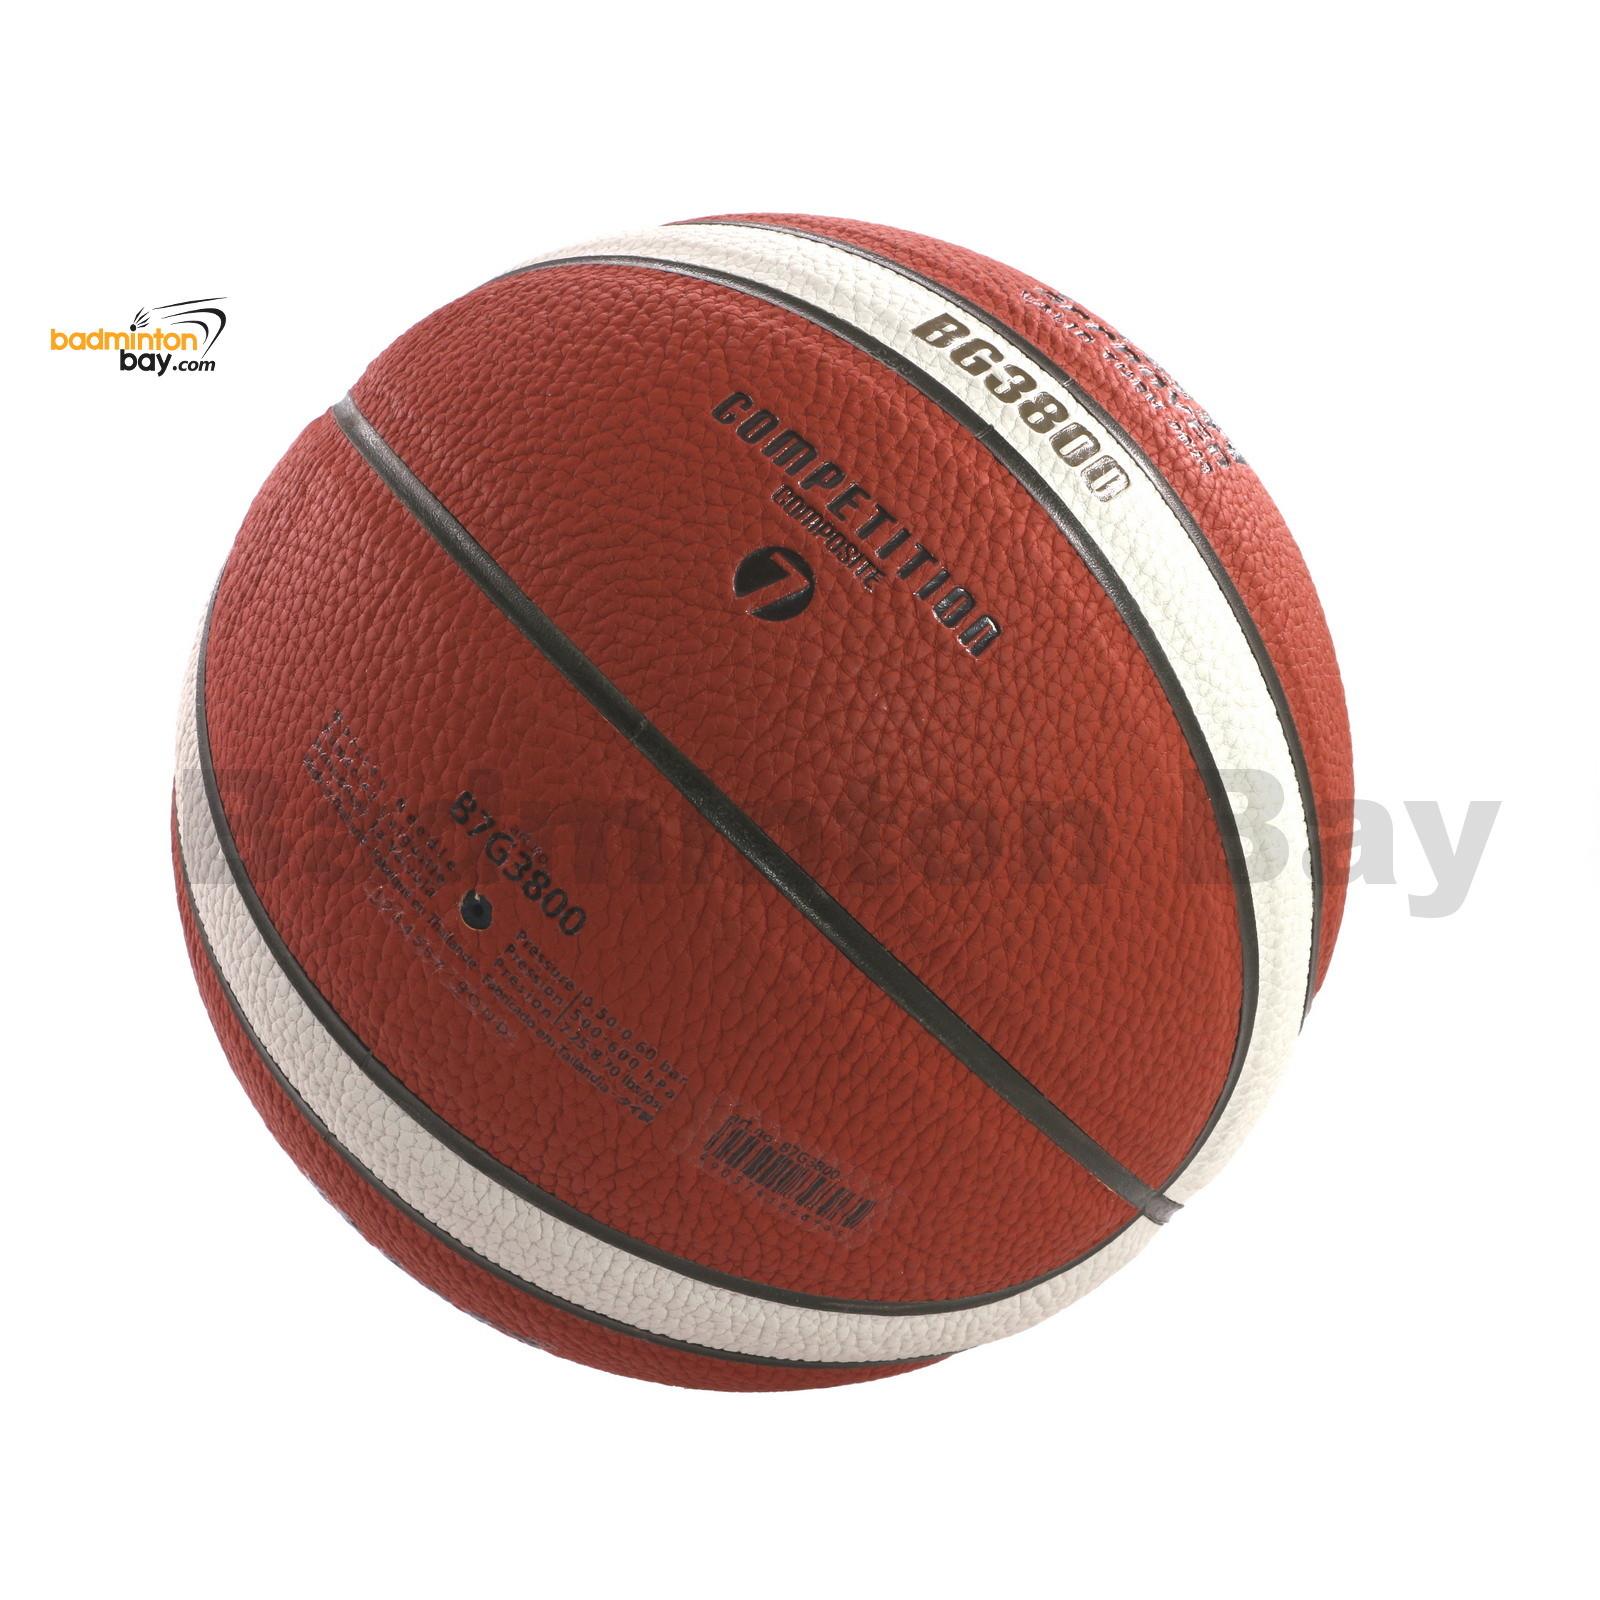 Größe 7 DBB geprüft FIBA Approved MOLTEN BGG7X Basketball GG7X 